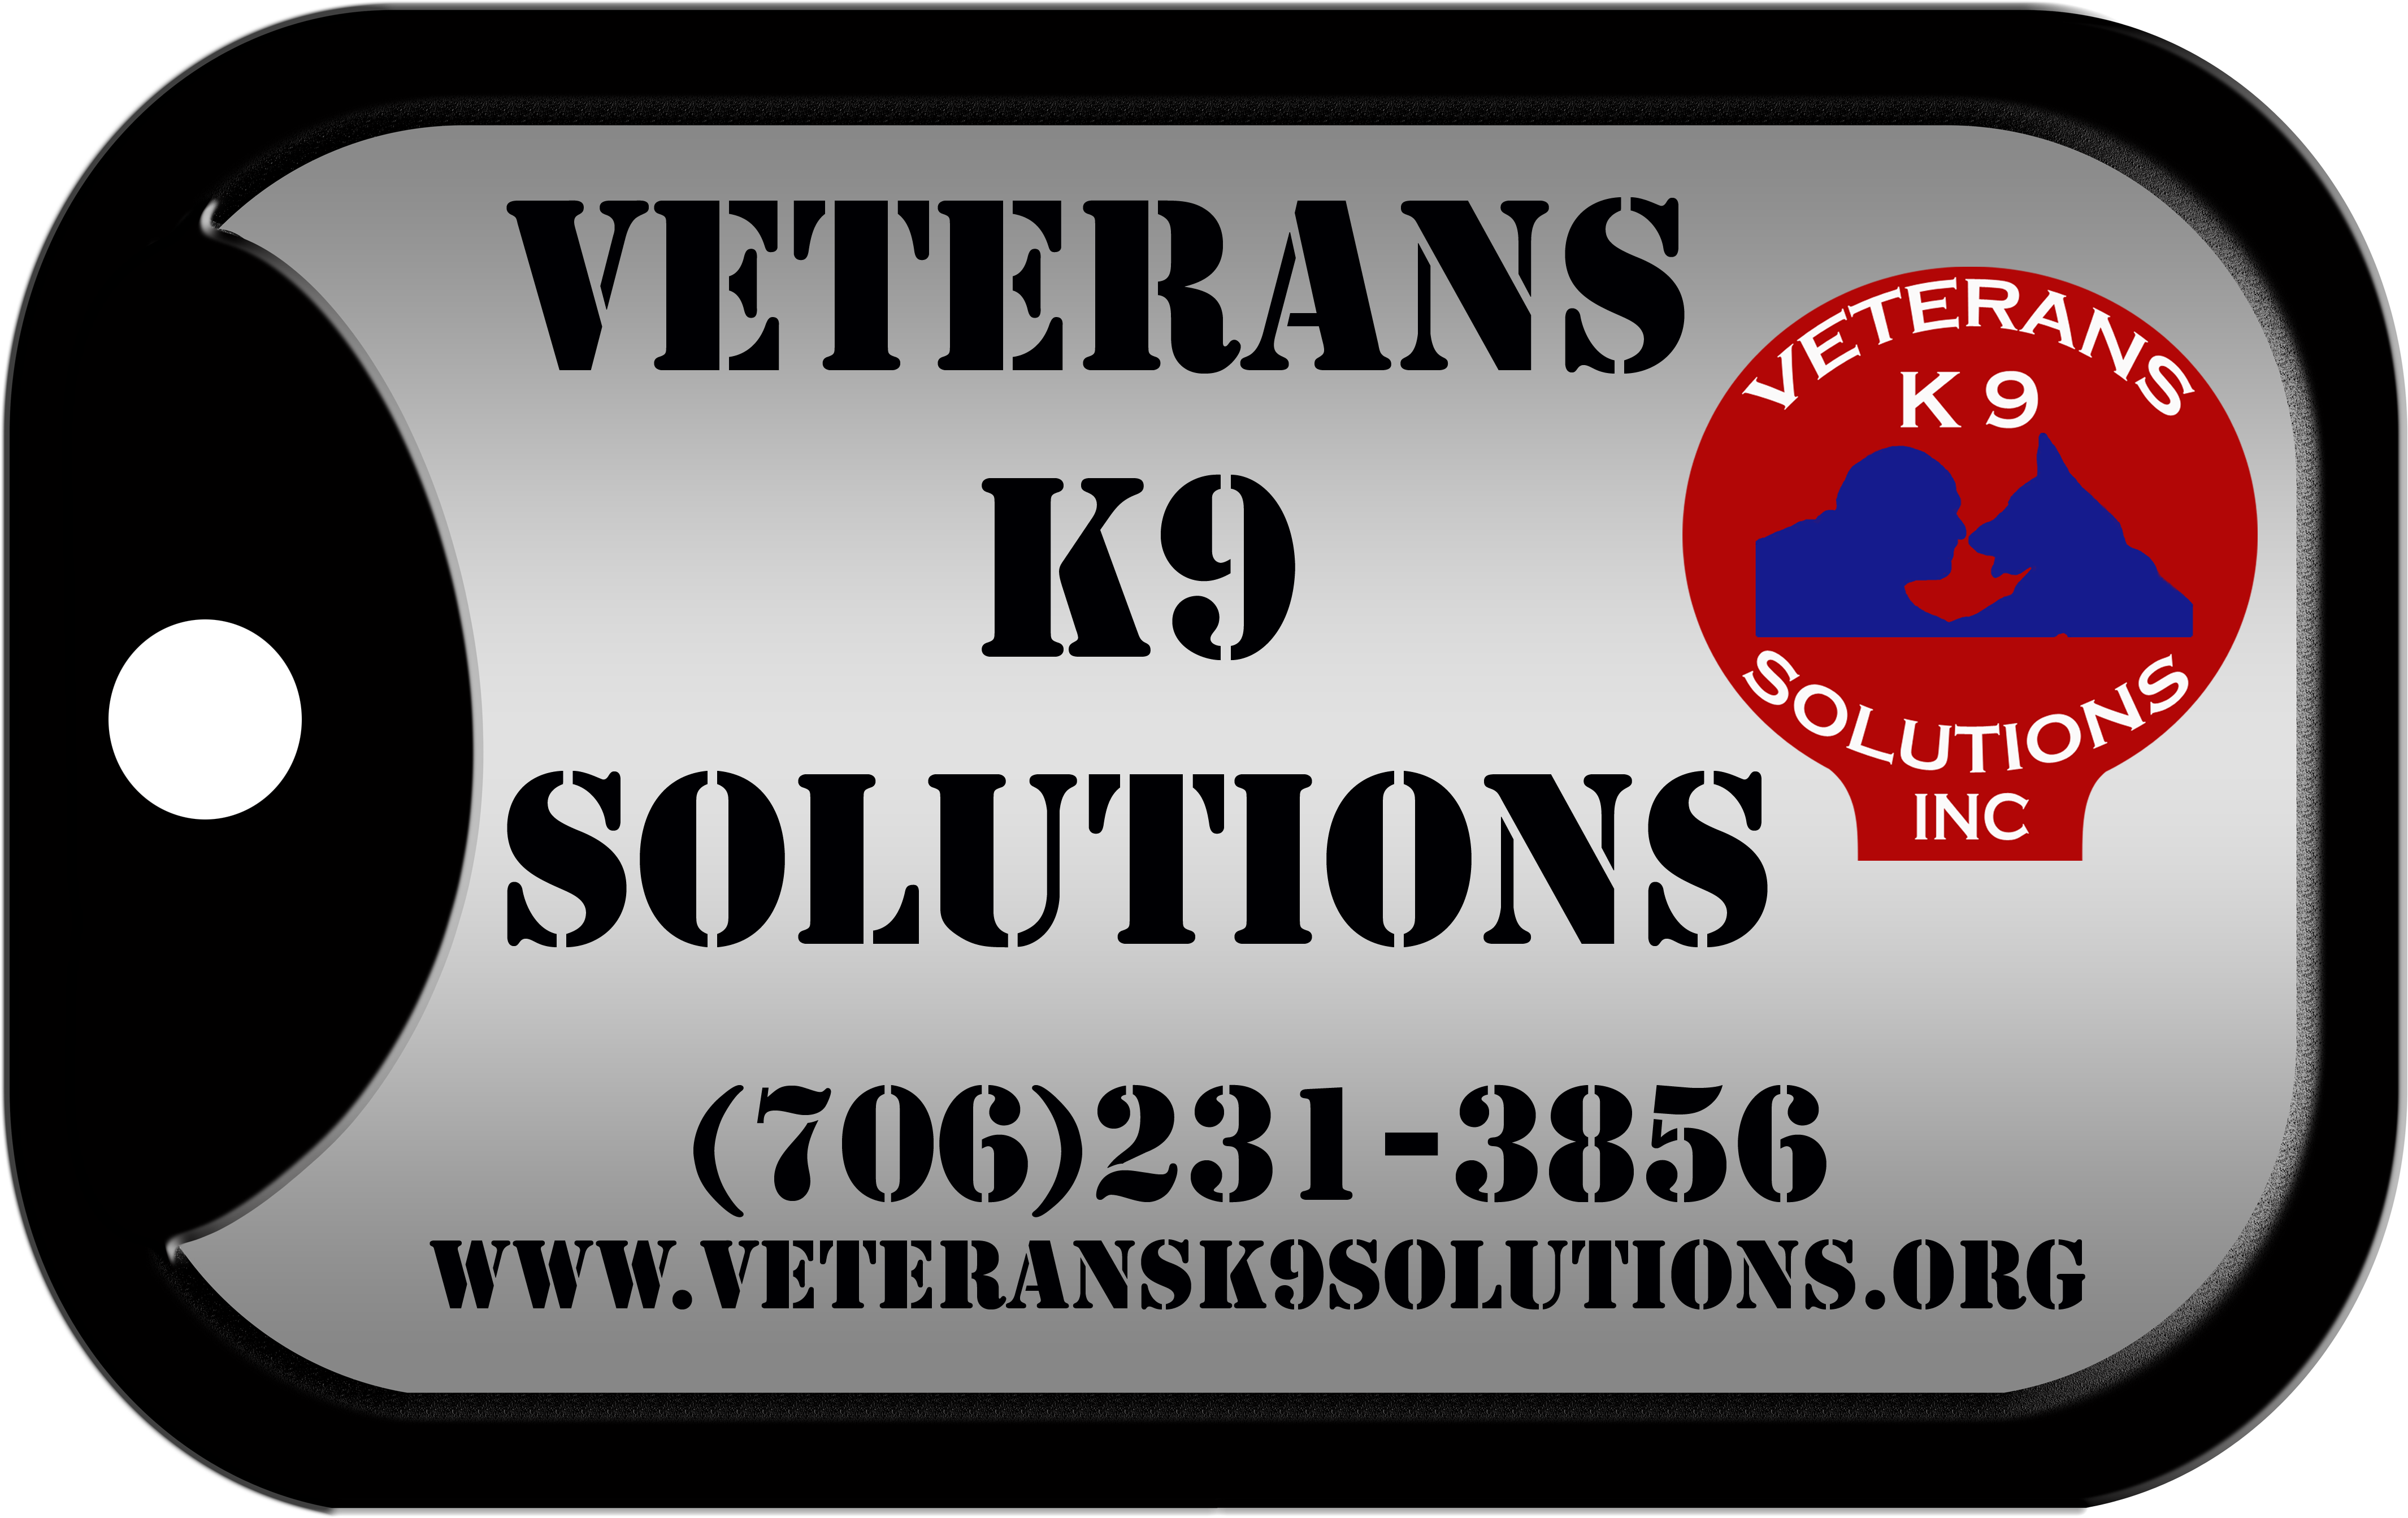 Veterans K9 Solutions